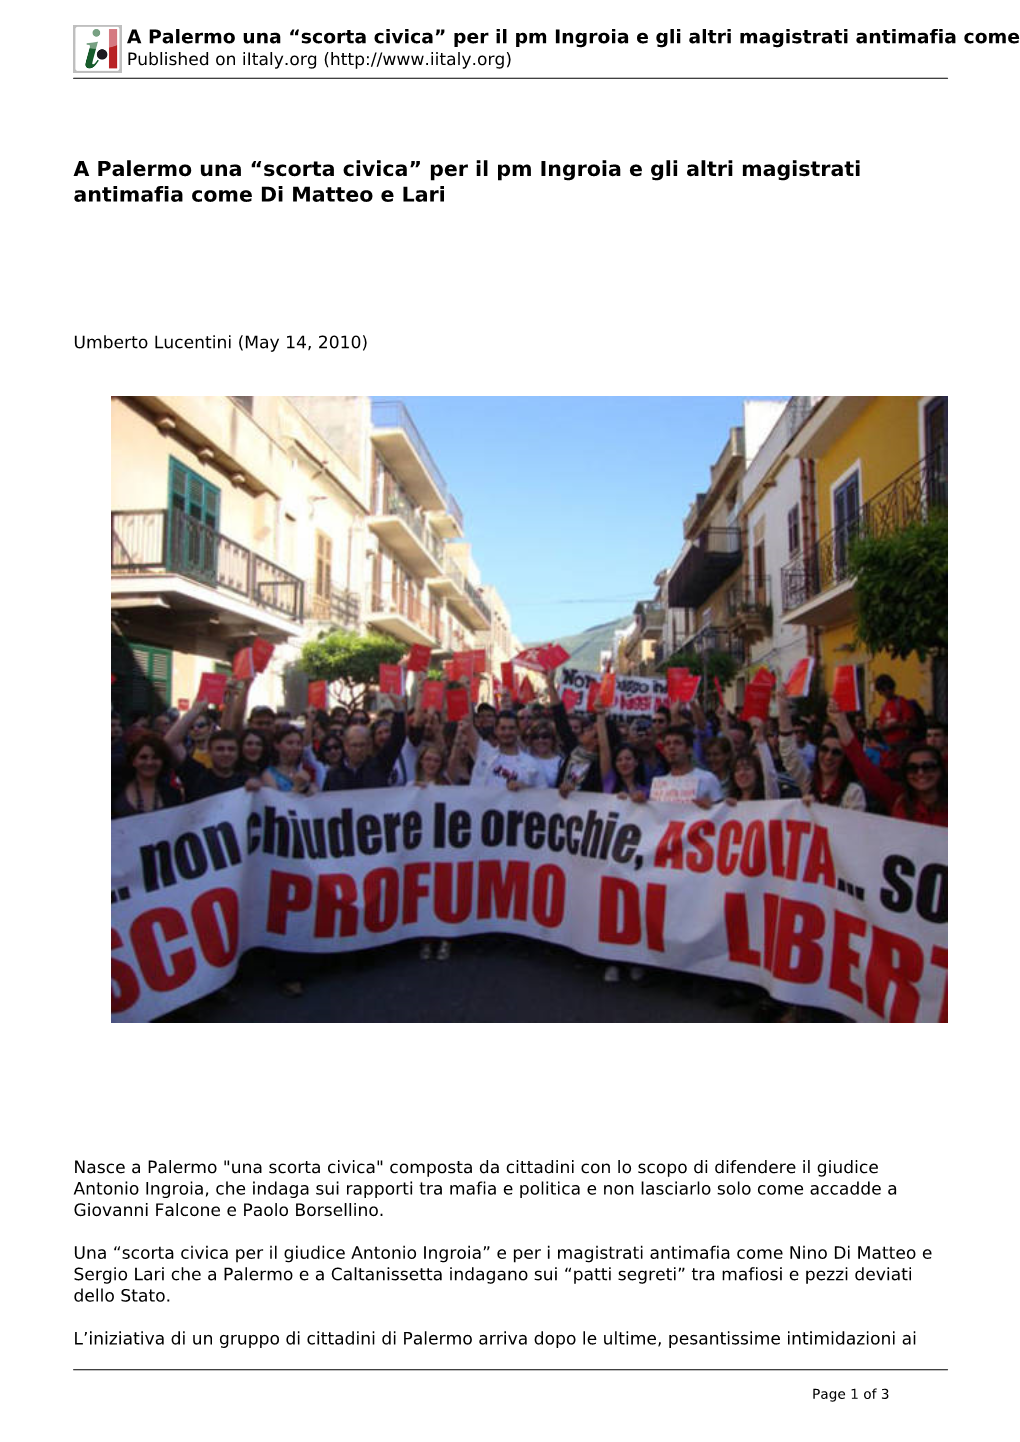 A Palermo Una “Scorta Civica” Per Il Pm Ingroia E Gli Altri Magistrati Antimafia Come Di Matteo E Lari Published on Iitaly.Org (